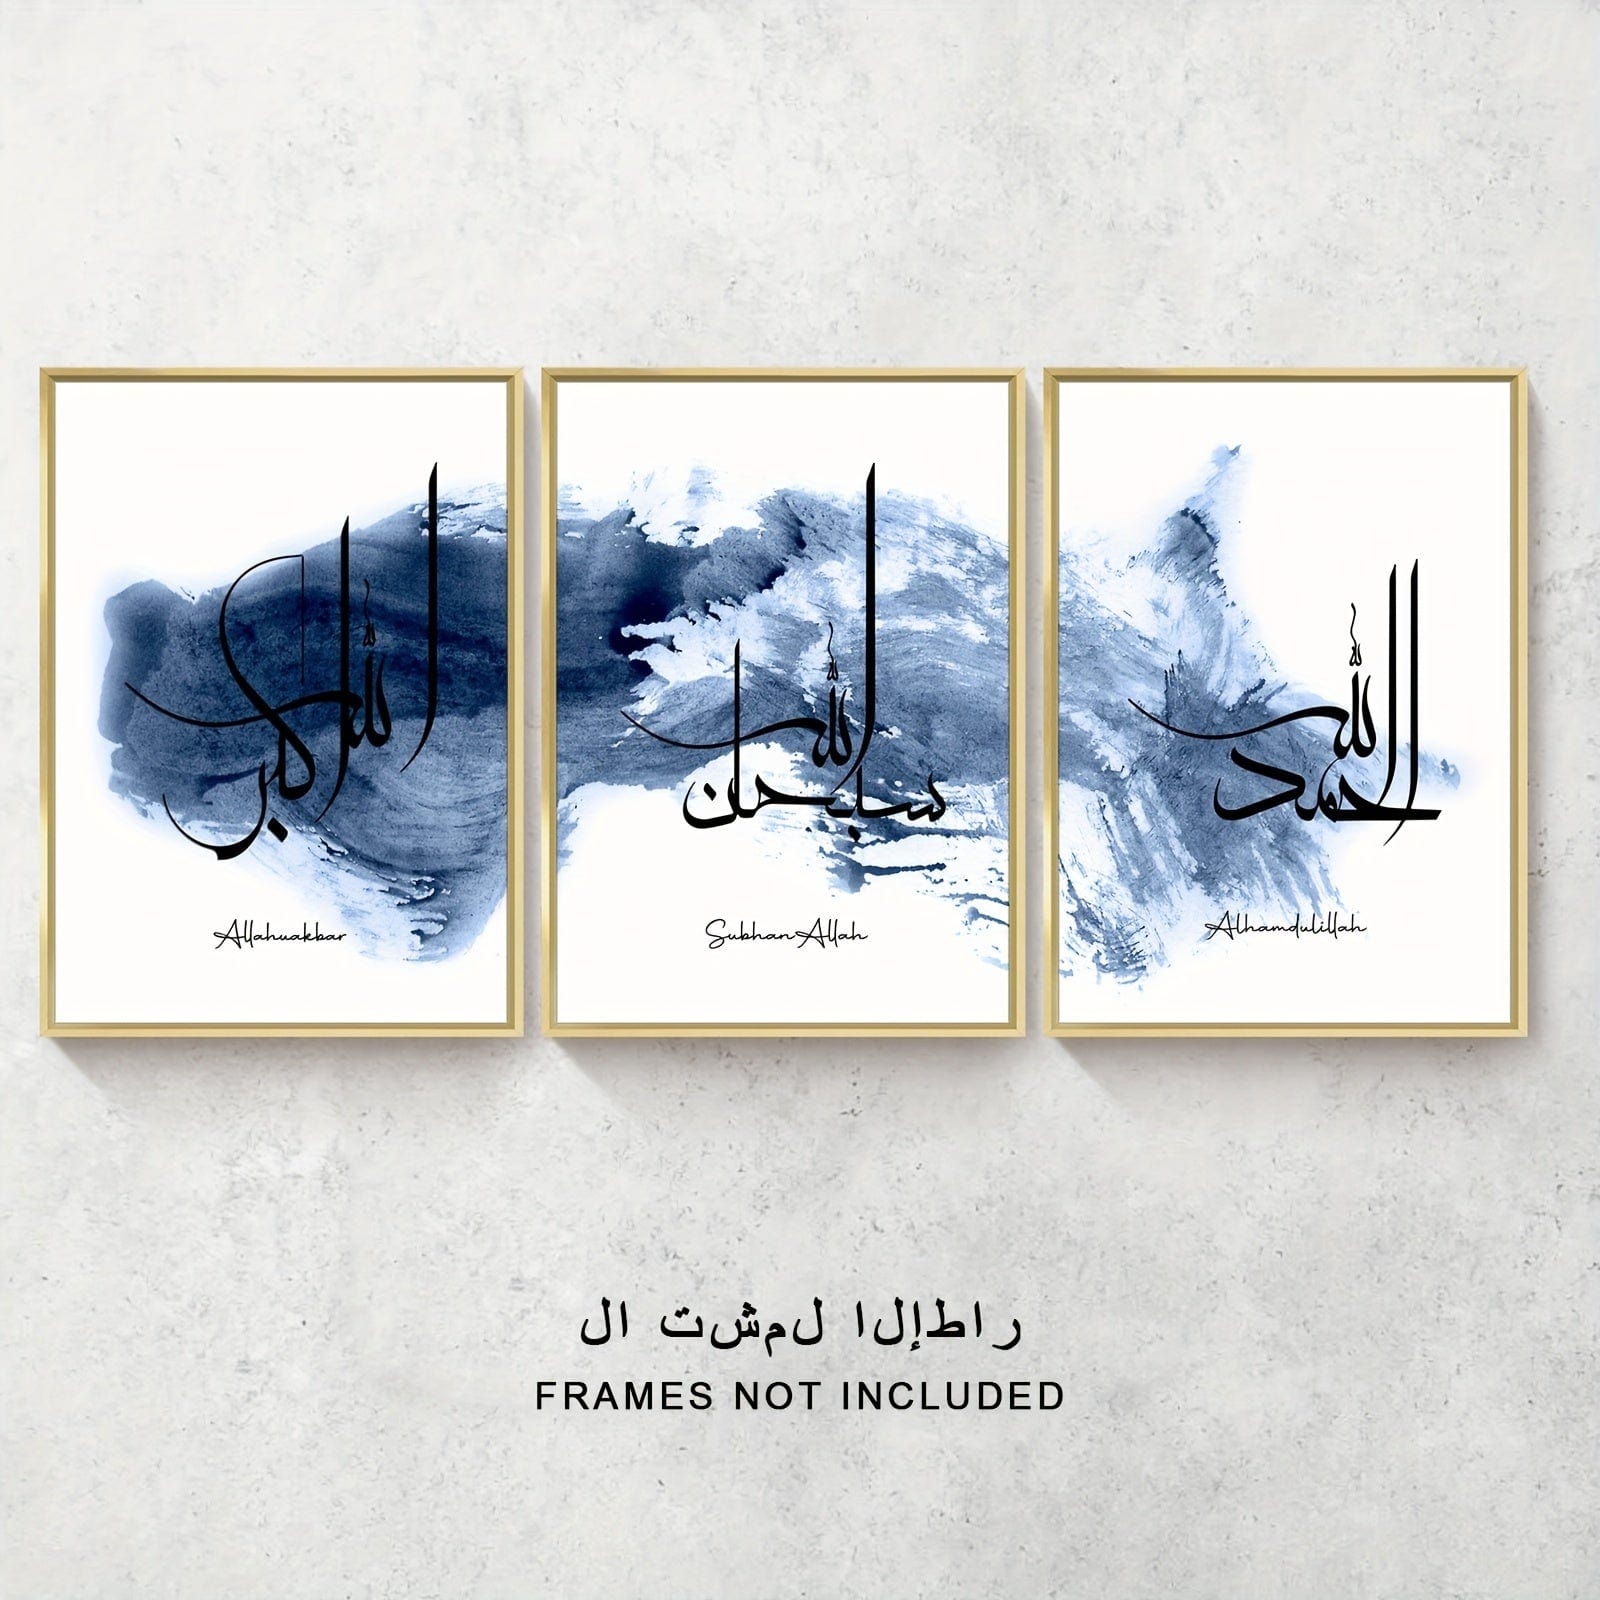 deen-souvenir customized 3-teiliges Islamisches Leinwandbild mit Motivationszitat - Typografie Kunstwerk